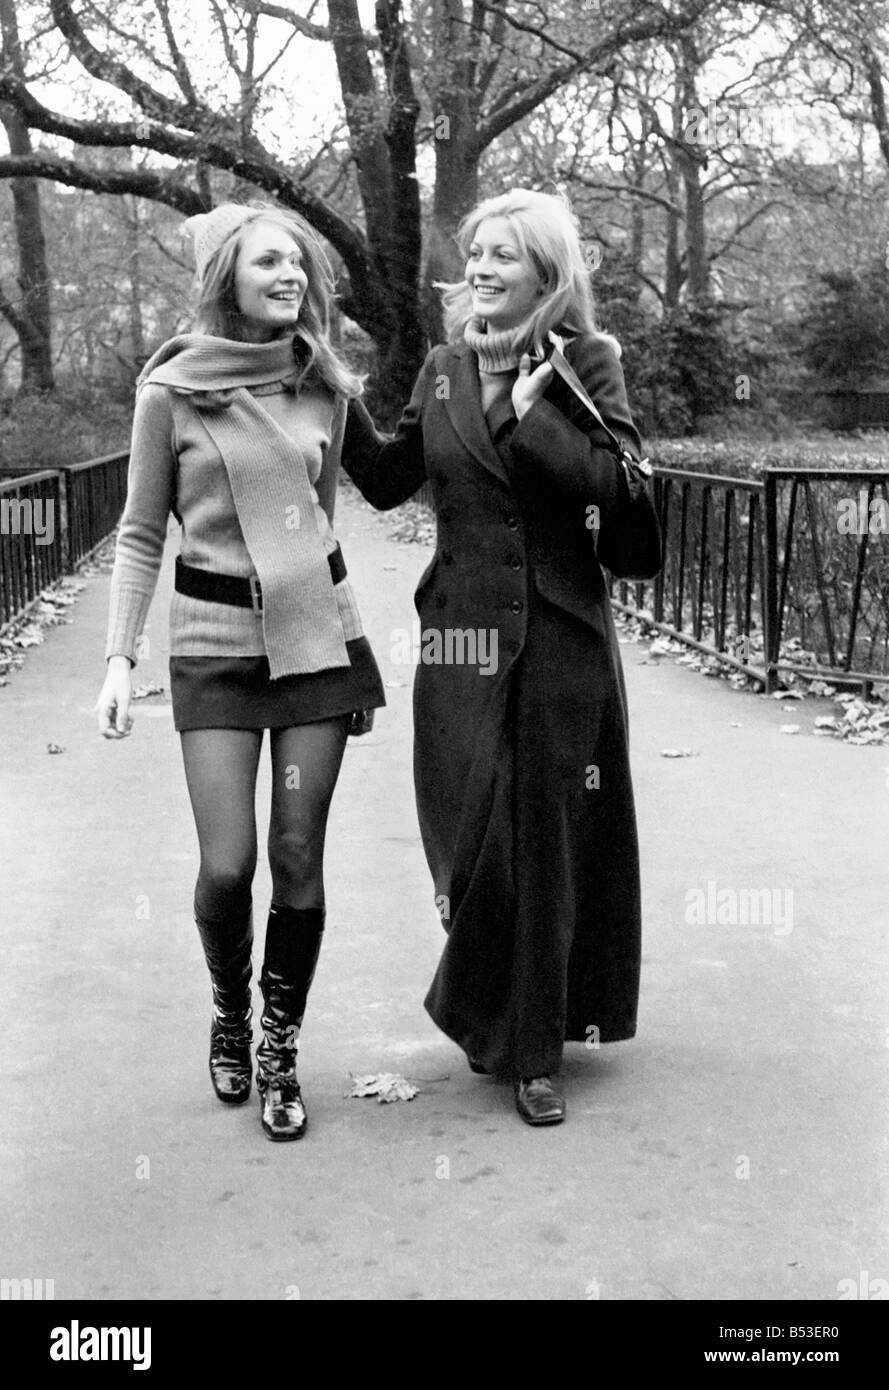 Modell Blanche Webb trägt Minirock und kniehohe Stiefel mit Modell Monica  Hahn trägt eine Maxi Mantel, durchstreifen die Stockfotografie - Alamy